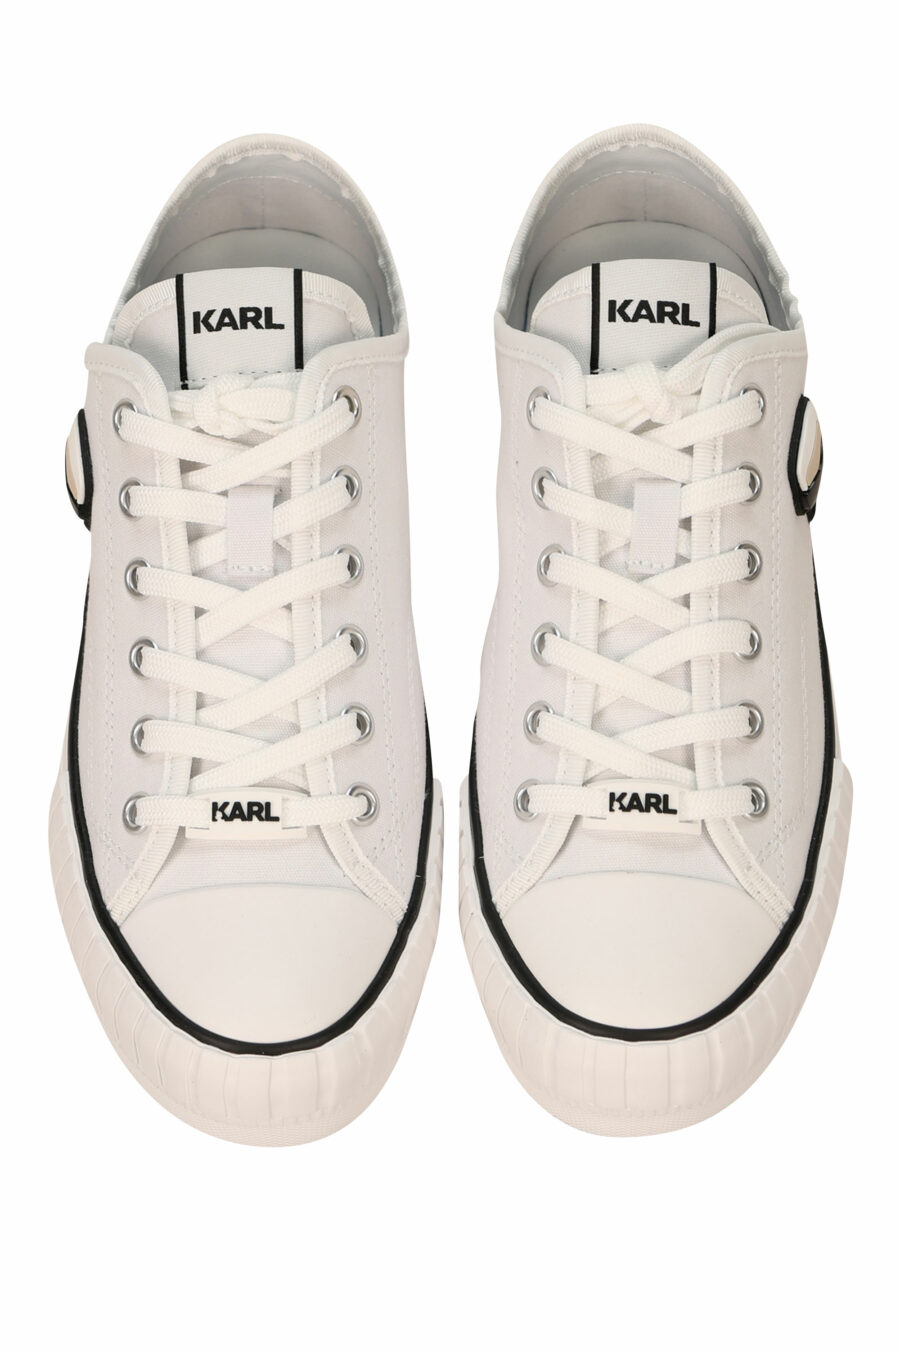 Zapatillas blancas estilo "converse" con minilogo de goma "karl" - 5059529384639 4